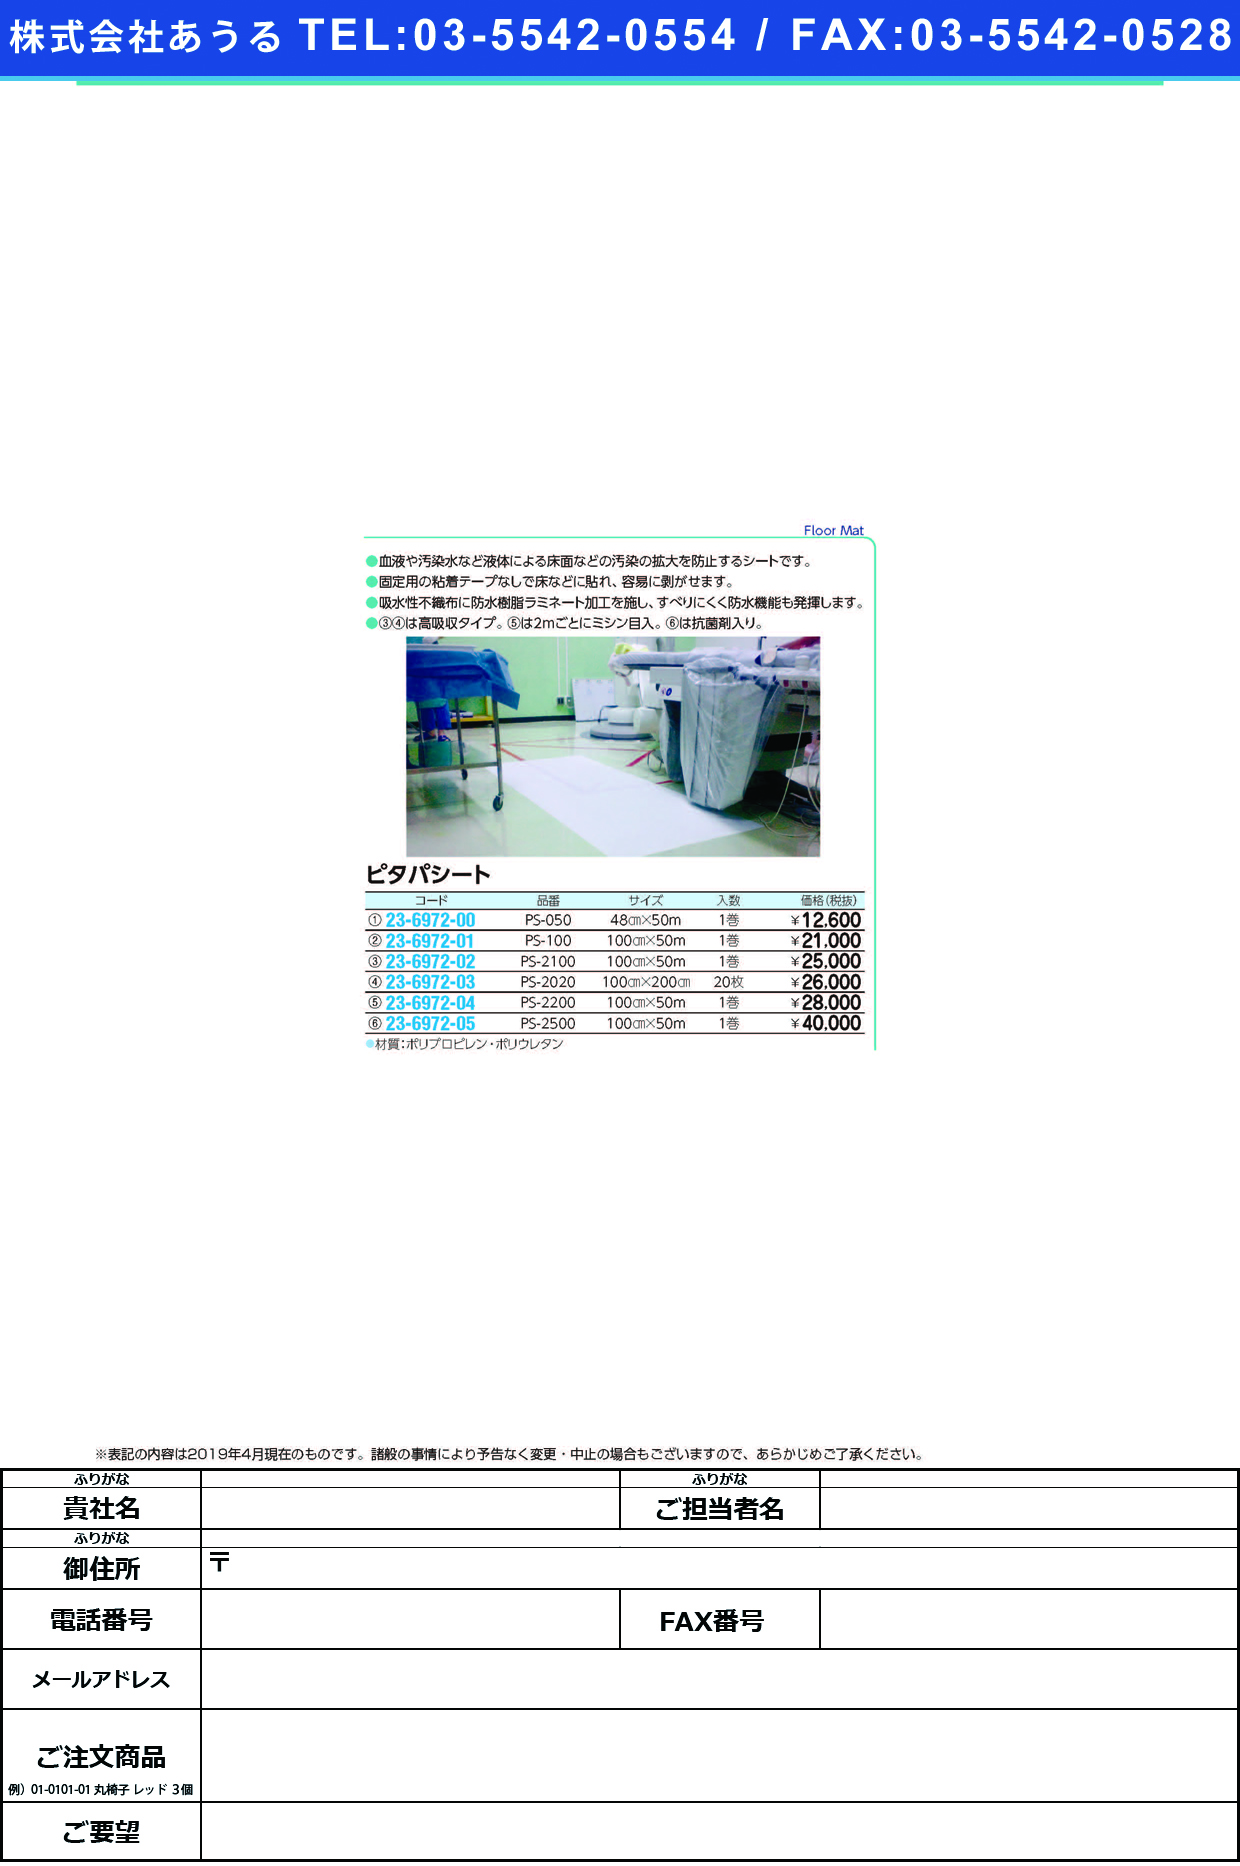 (23-6972-05)ピタパシートPS-2500(100CMX50M) ﾋﾟﾀﾊﾟｼｰﾄ(バイリーンクリエイト)【1梱単位】【2019年カタログ商品】